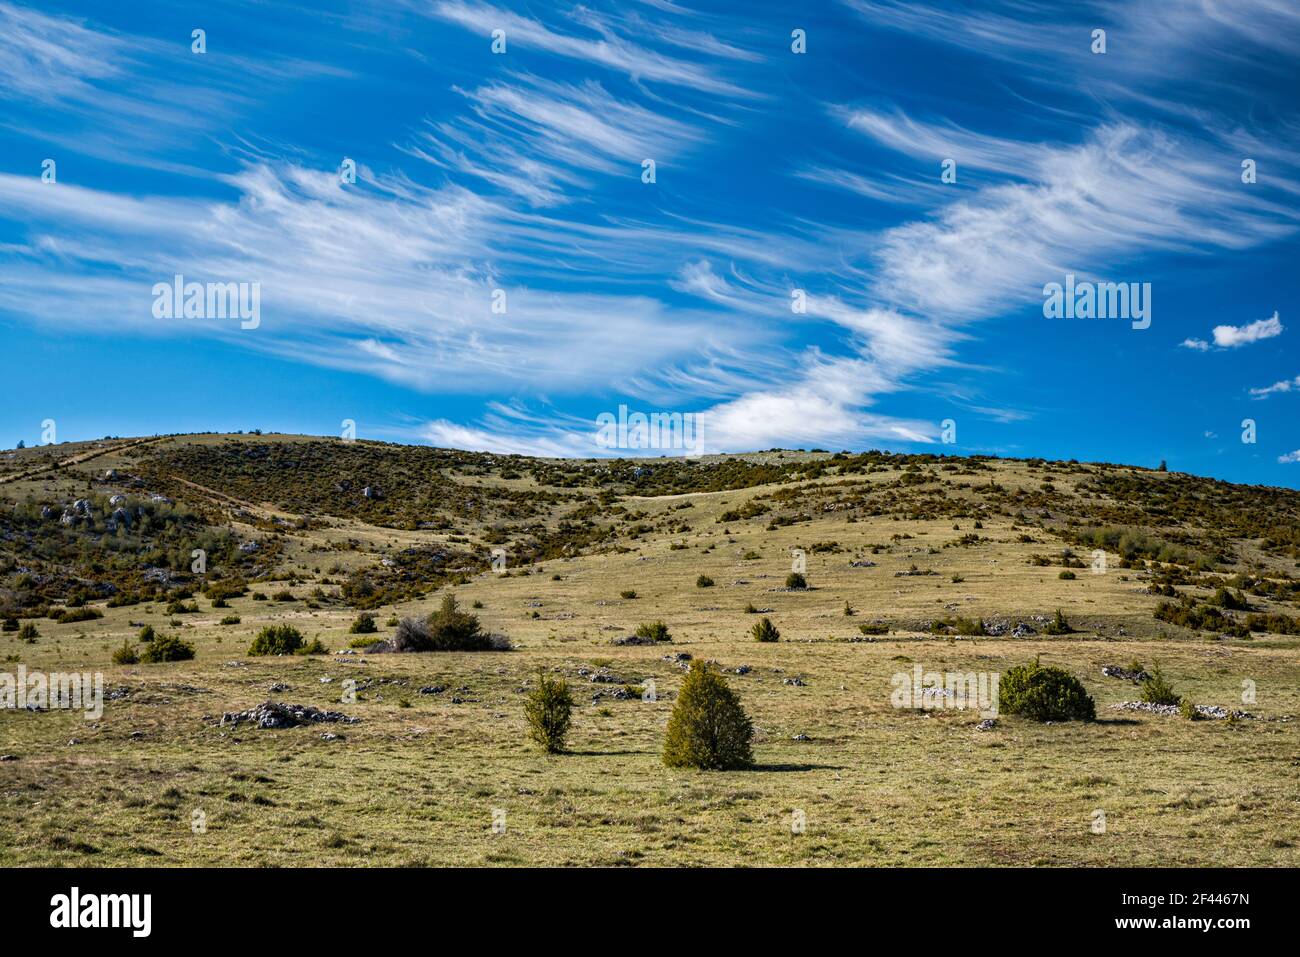 Paysage des causses arides, nuages cirrus, vue de la route D16, au plateau du Causse Mejean, massif Central, département de Lozère, région occitanie, France Banque D'Images